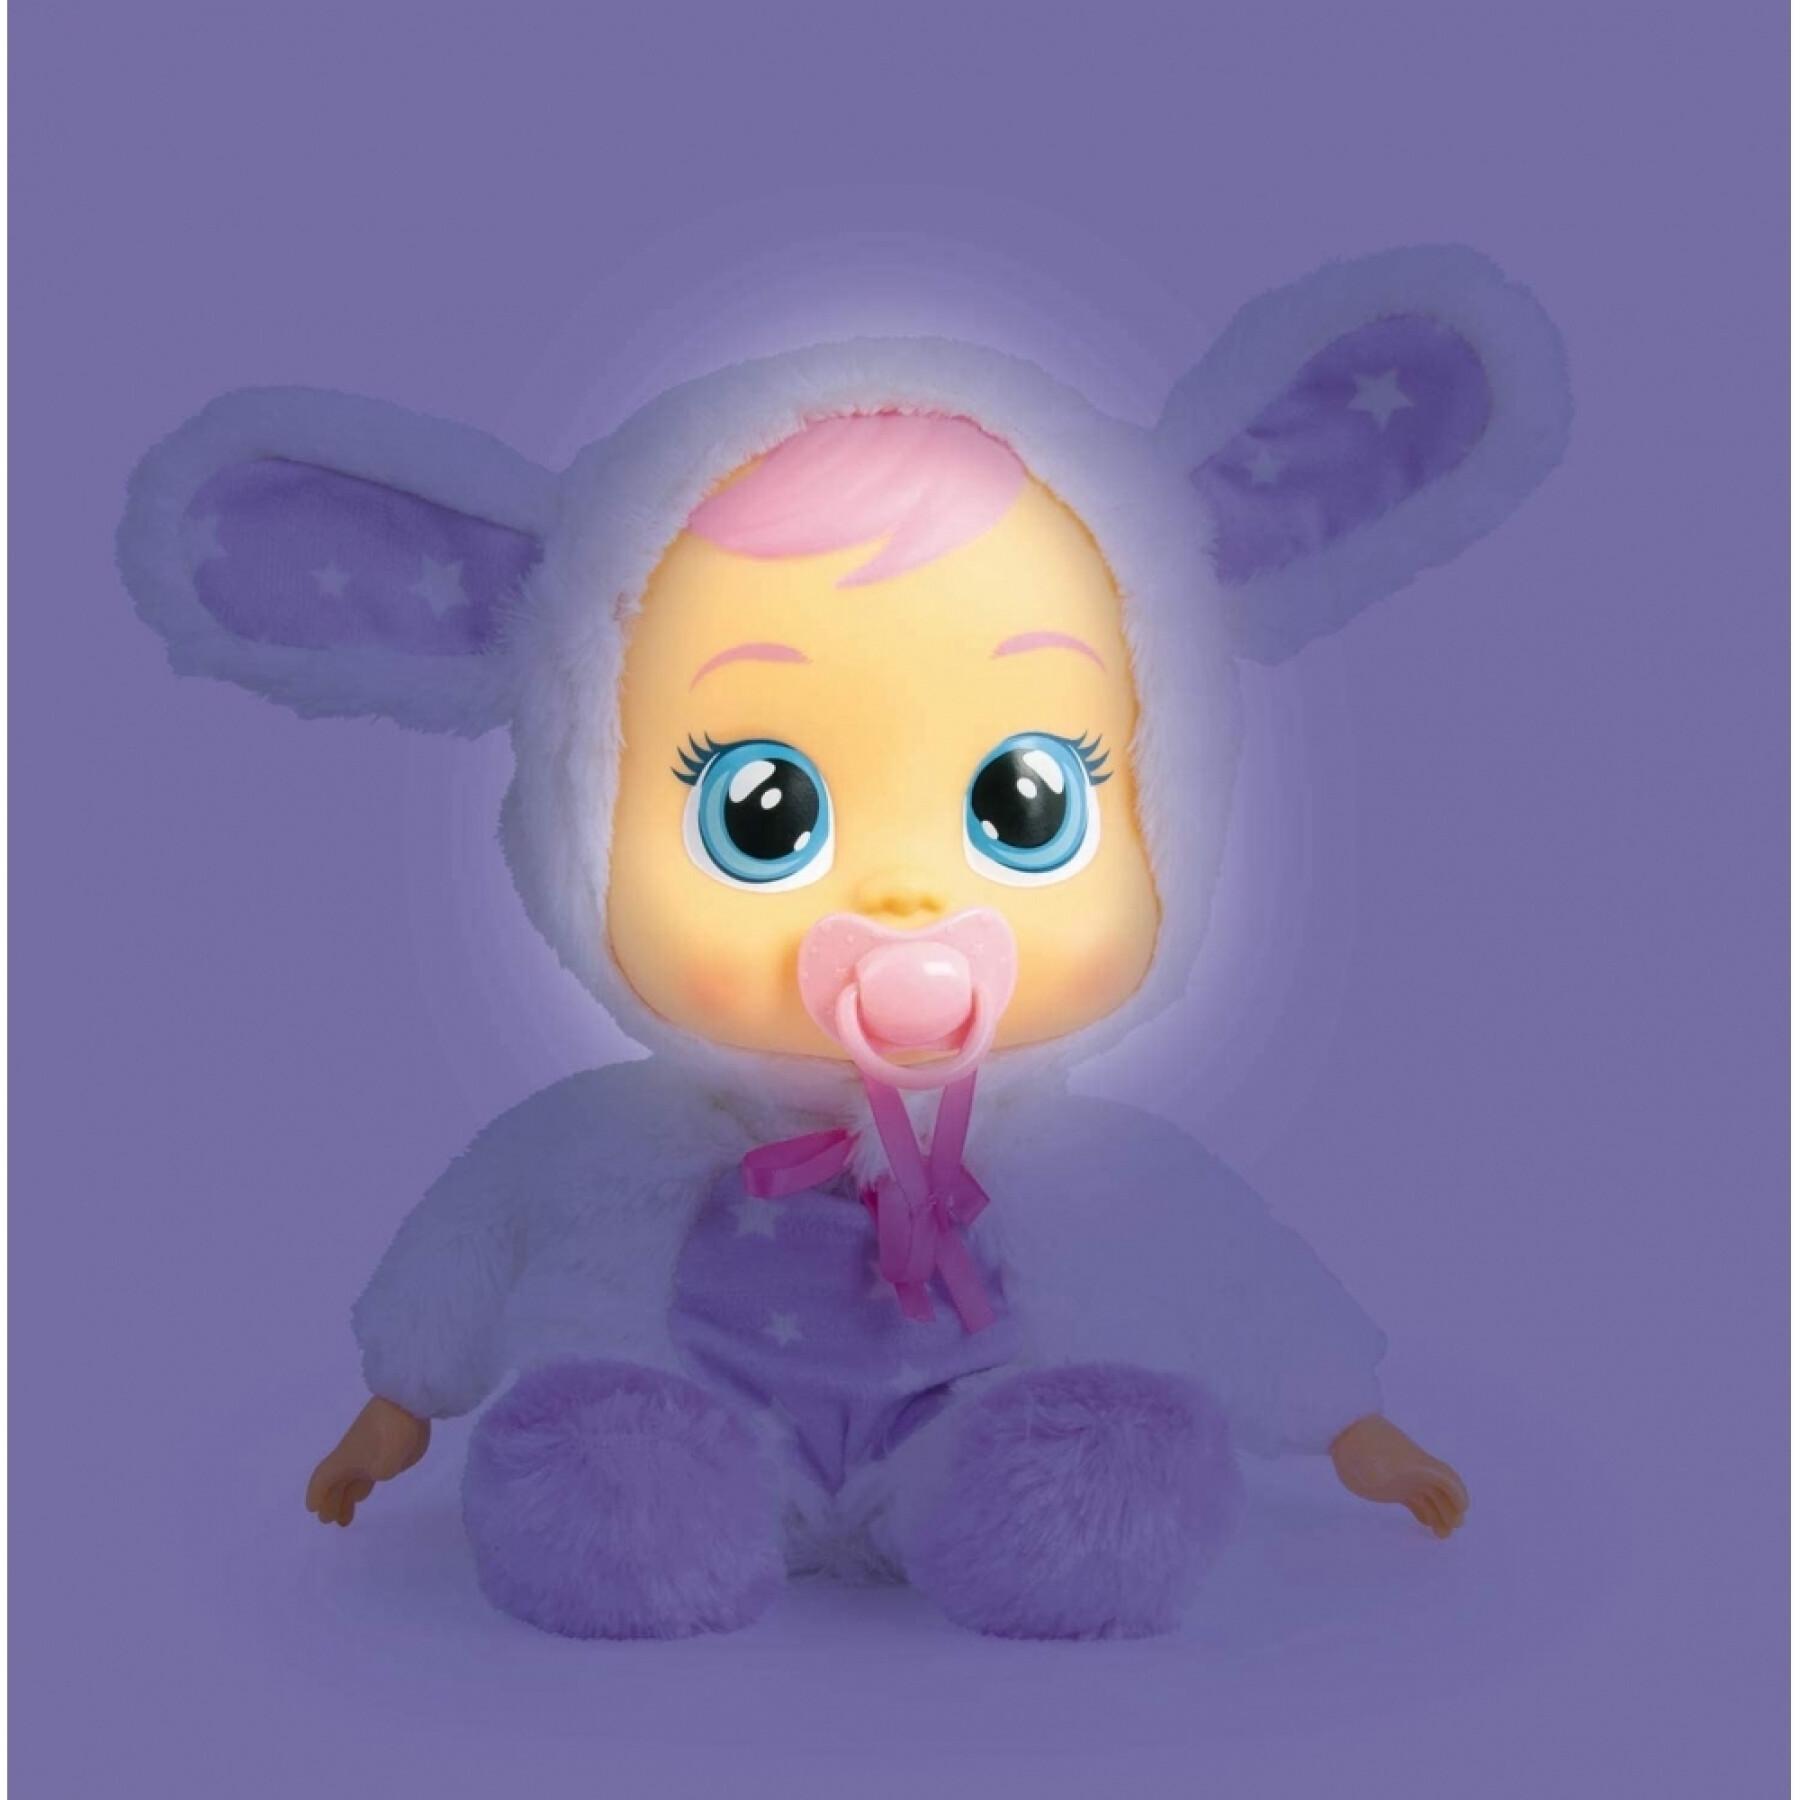 Docka IMC Toys Coney sueños Luz lágrimas